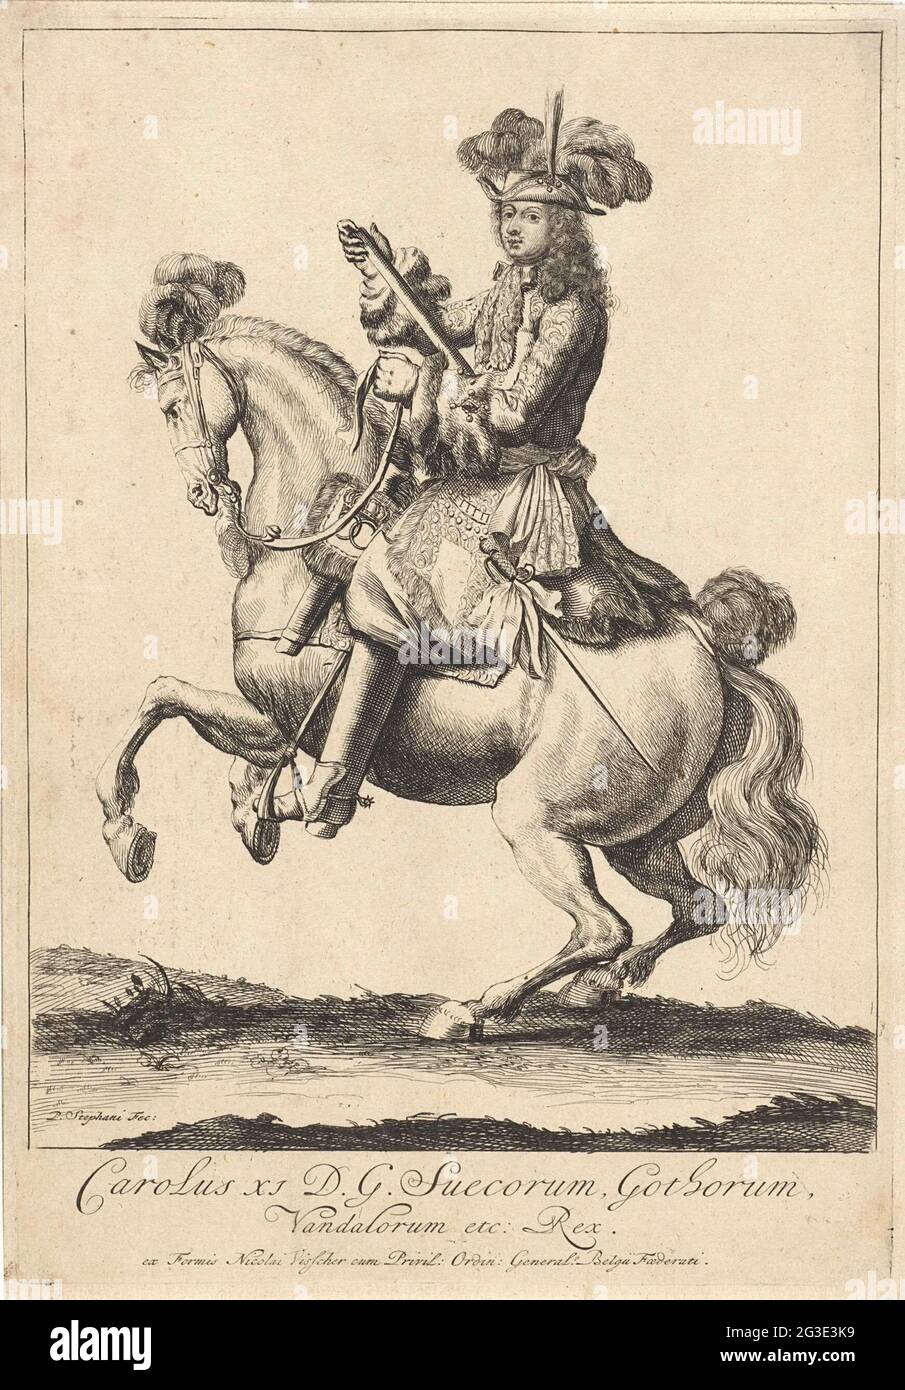 Retrato ecuestre del rey Carlos Xi de Suecia. Retrato de Charles Xi, rey de Suecia, a caballo con una estufa de comando en su mano. En la parte inferior del nombre y posición del margen en latín. Foto de stock